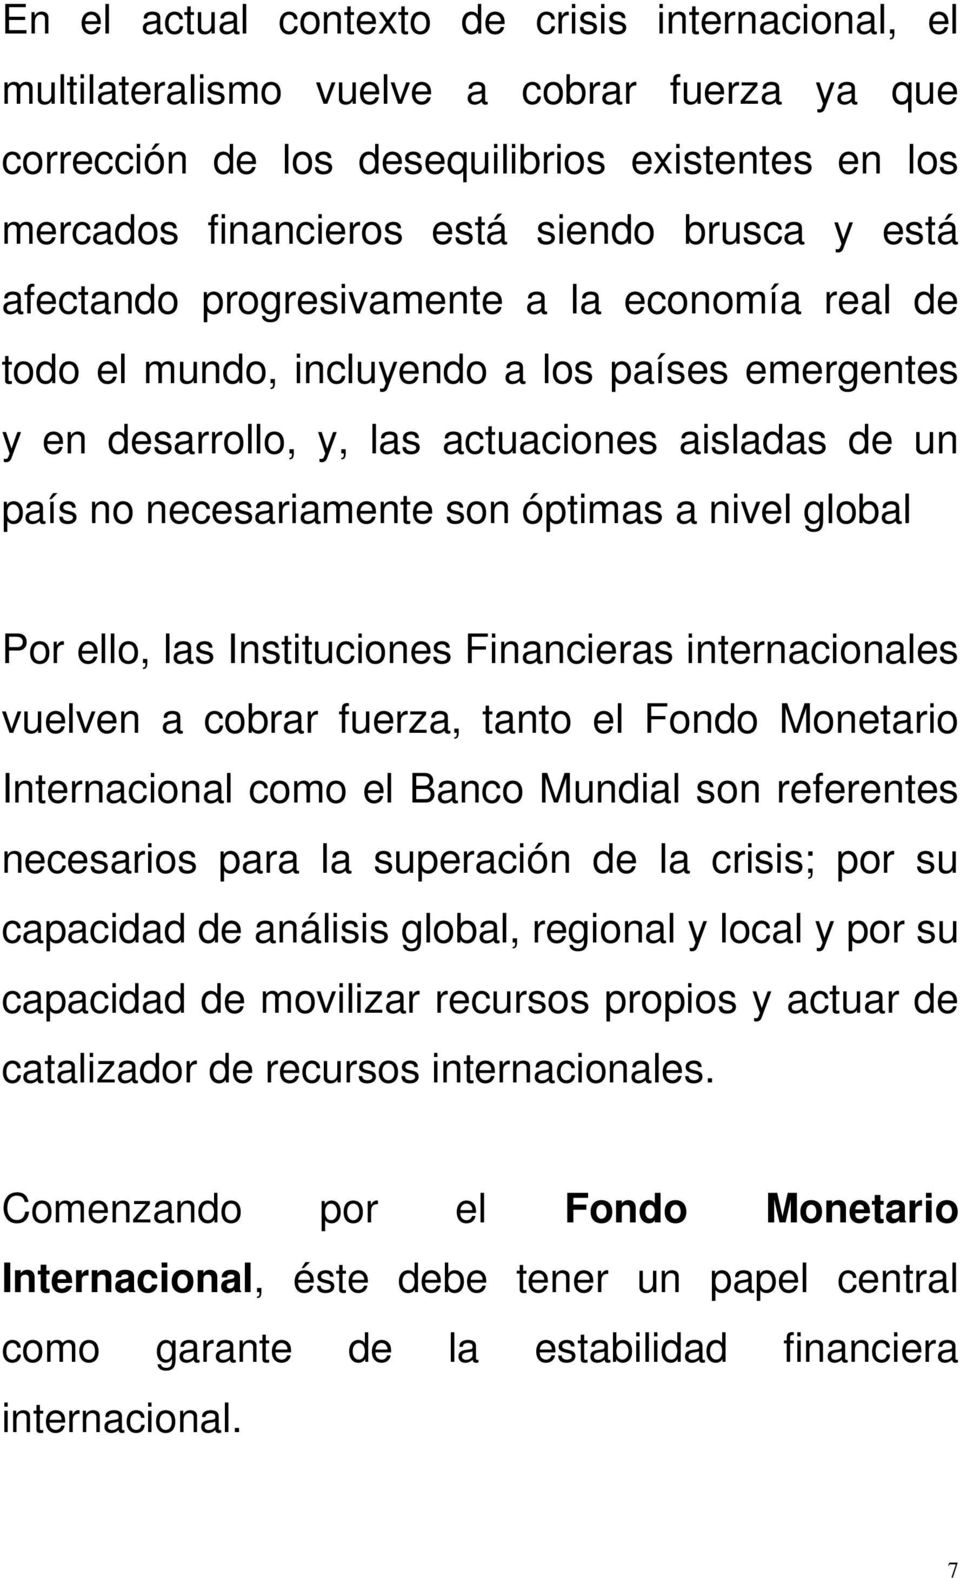 Por ello, las Instituciones Financieras internacionales vuelven a cobrar fuerza, tanto el Fondo Monetario Internacional como el Banco Mundial son referentes necesarios para la superación de la